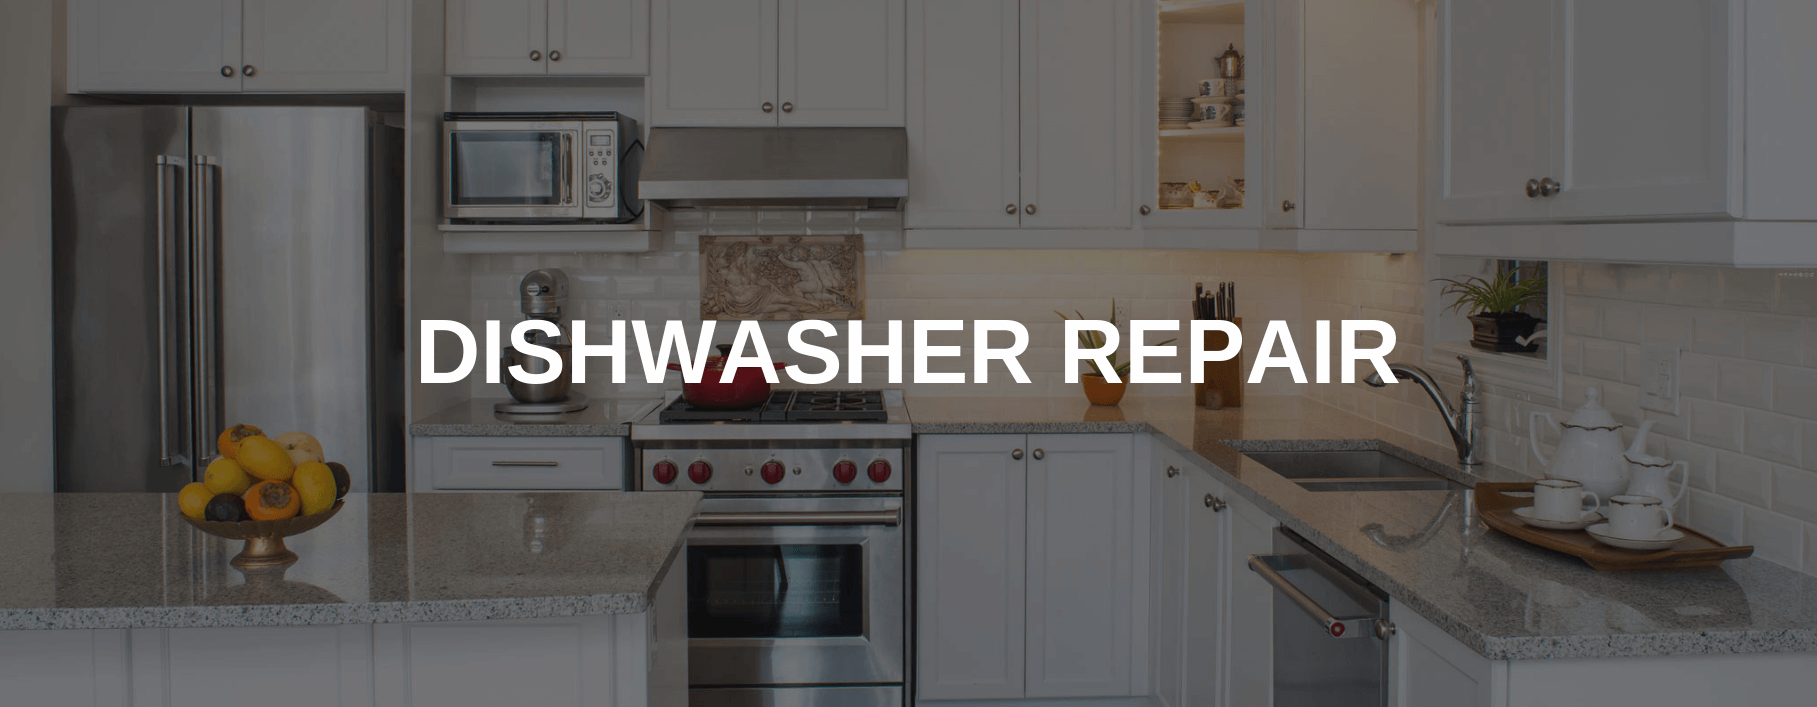 dishwasher repair fort lee